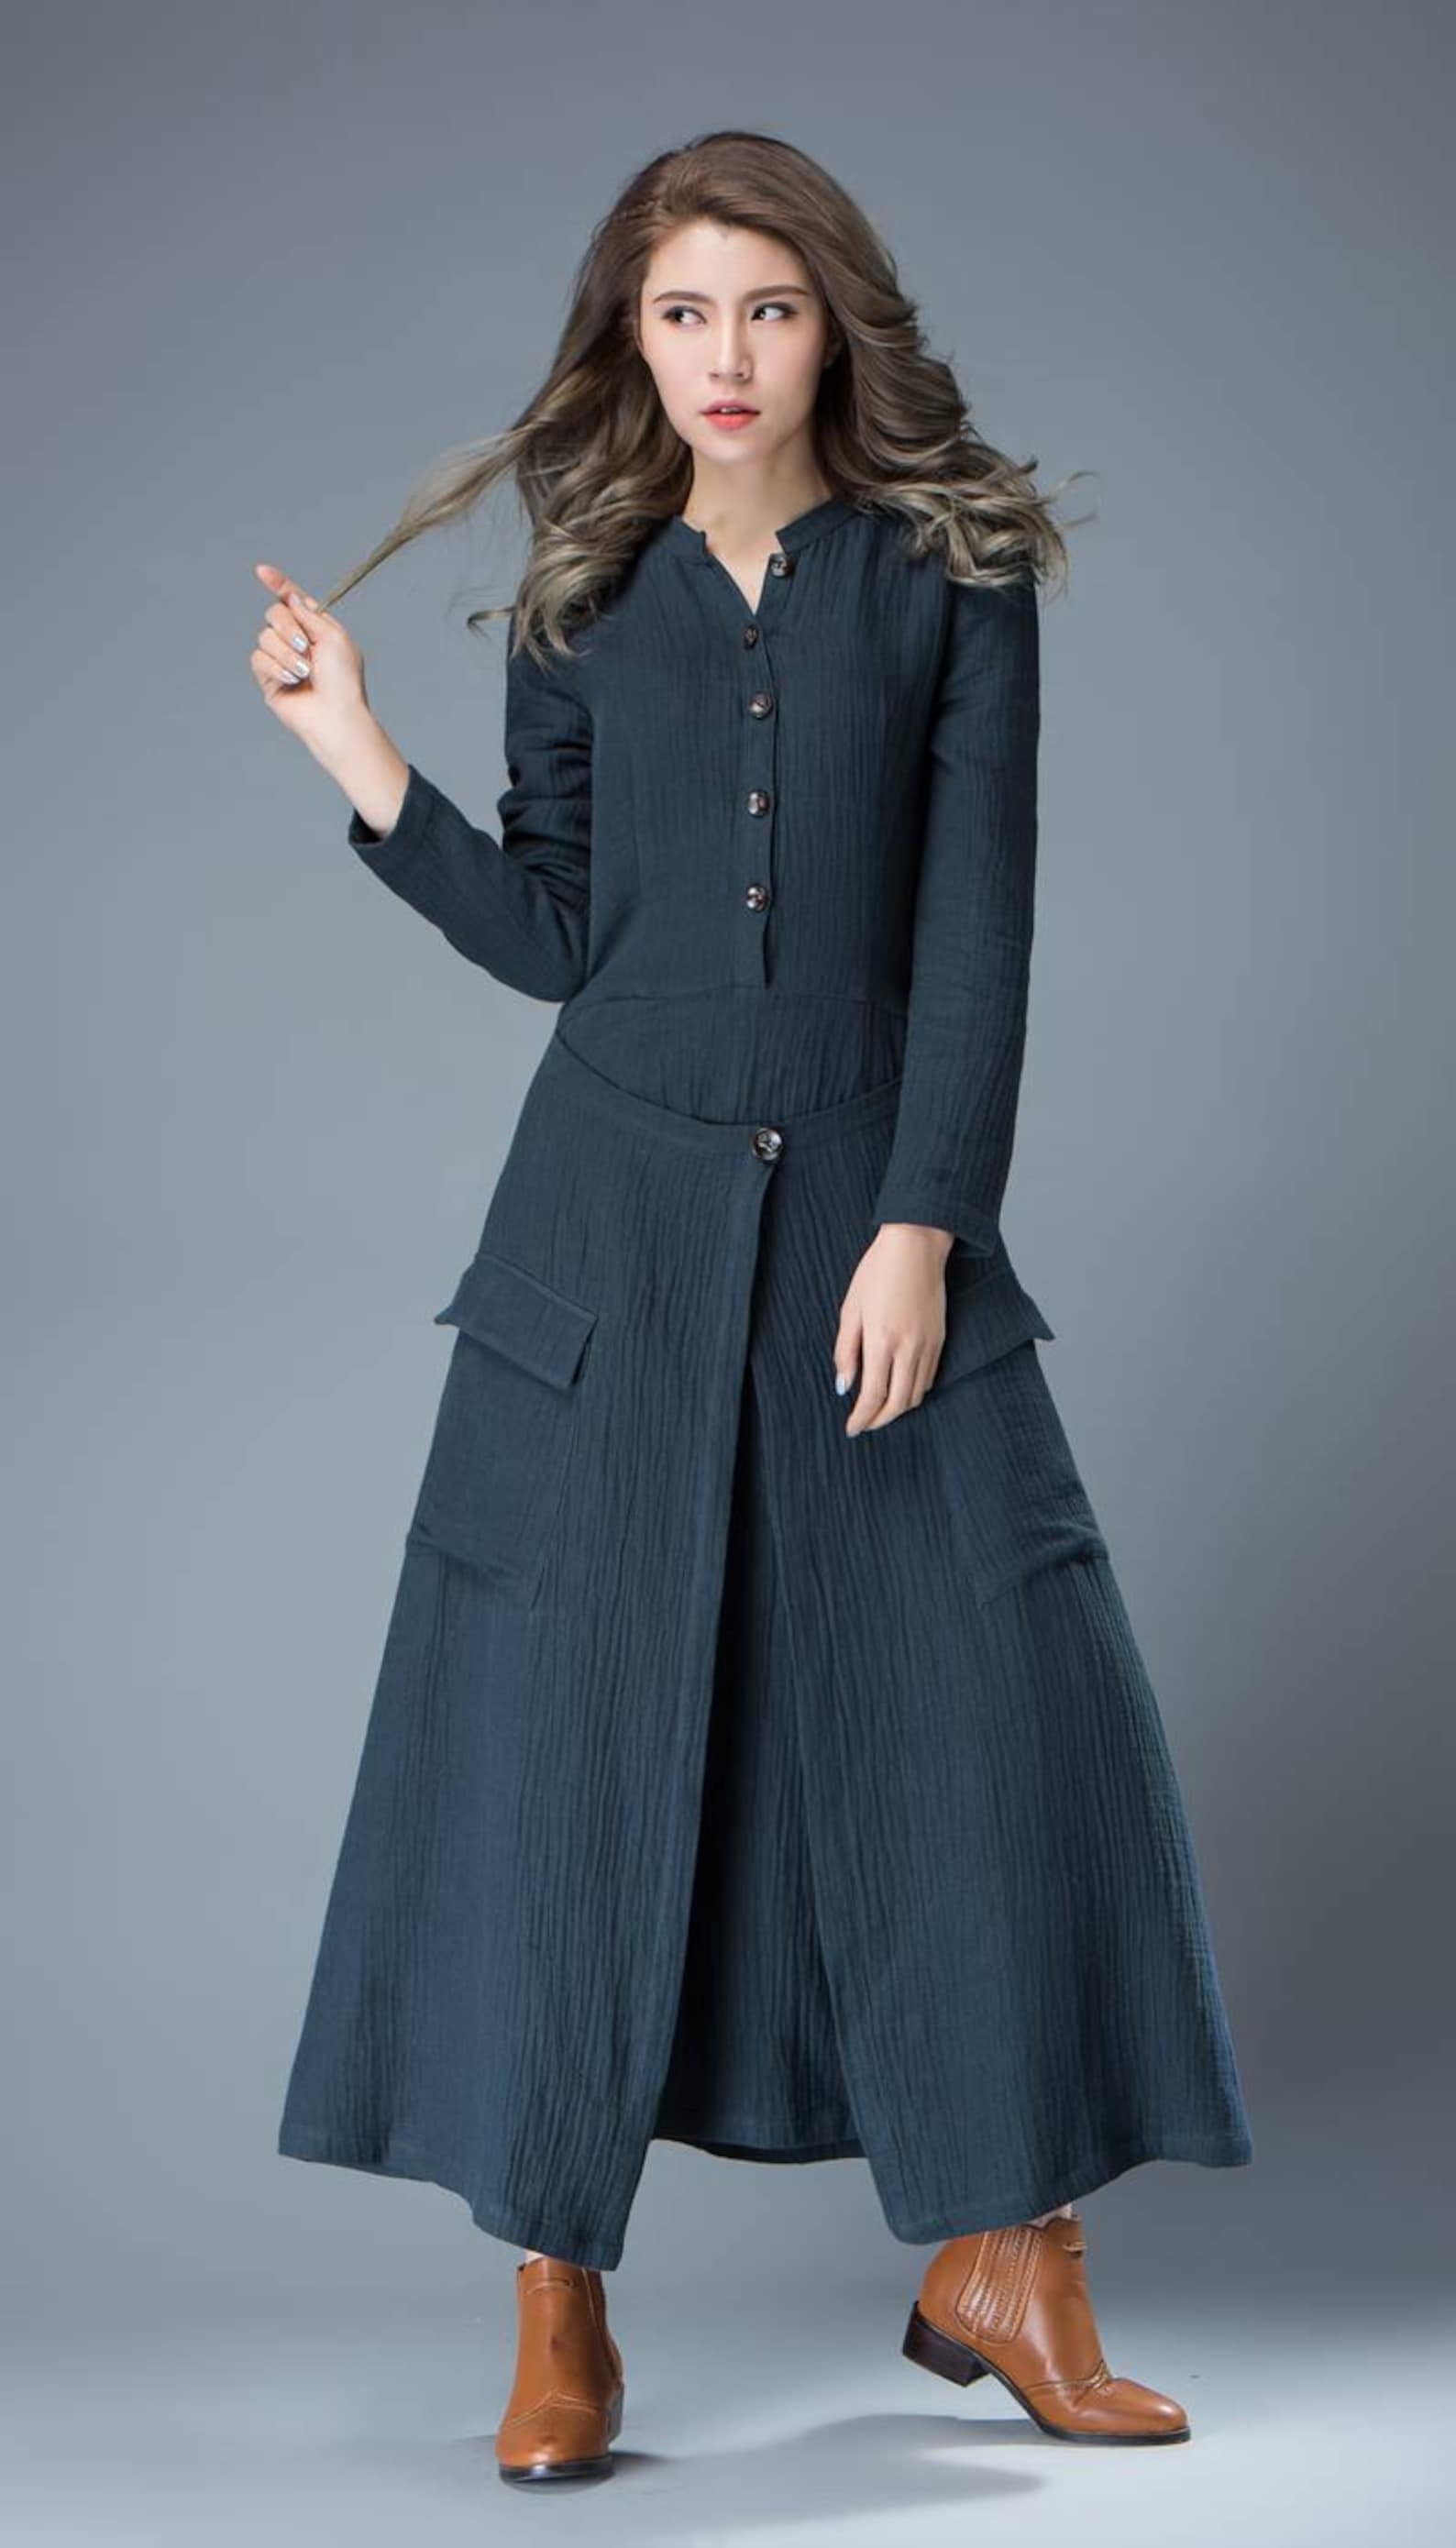 Navy Blue Linen Dress Linen Wrap dress Button up dress | Etsy